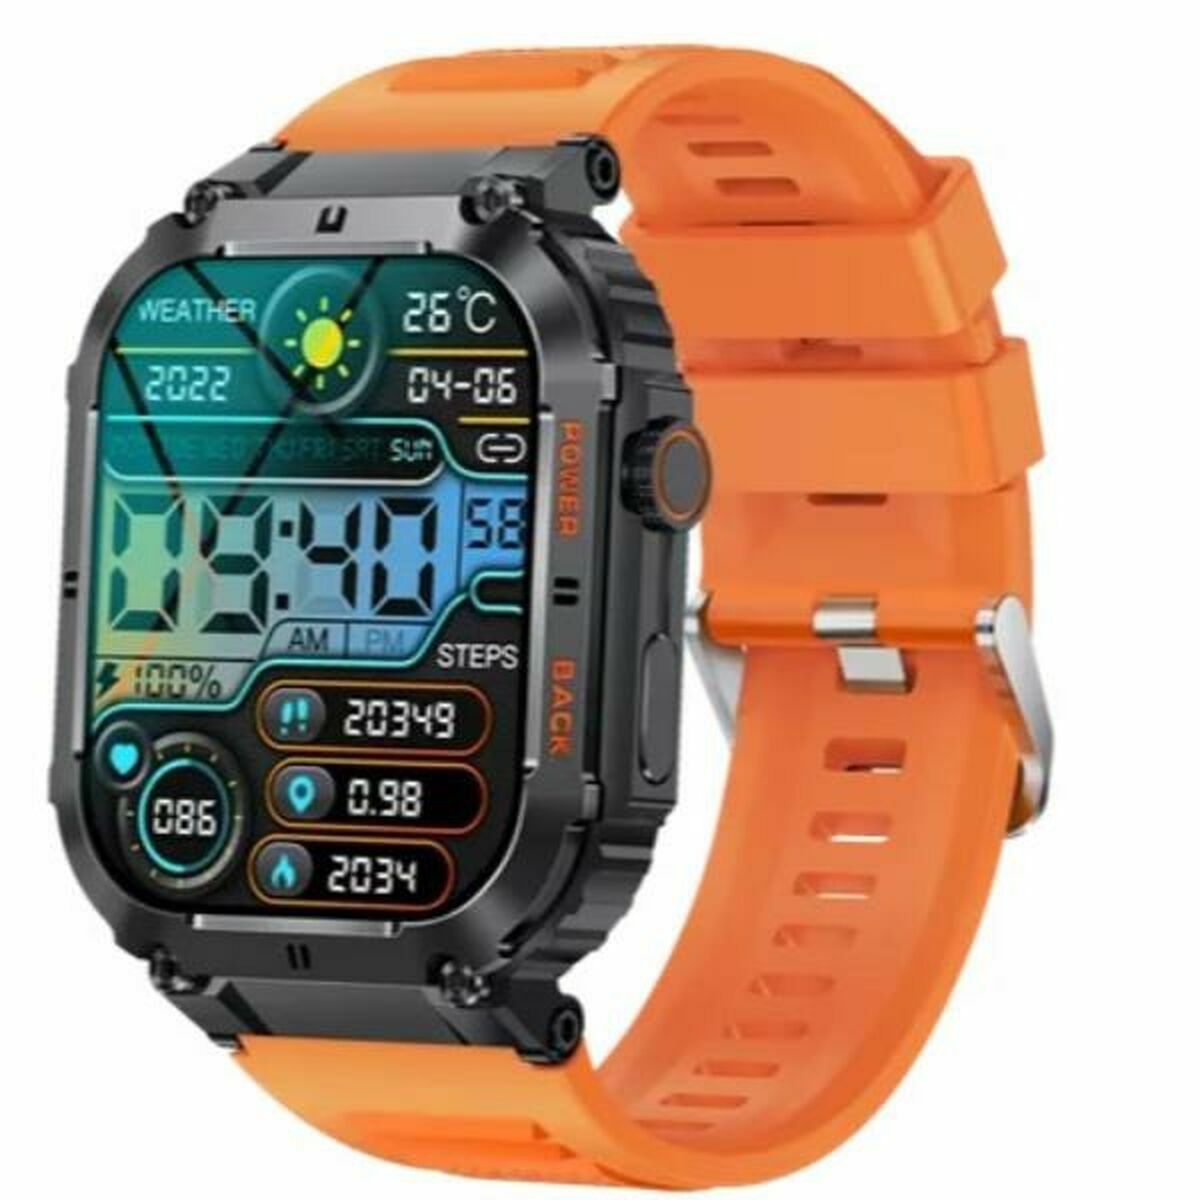 Kaufe Smartwatch Denver Electronics bei AWK Flagship um € 59.00